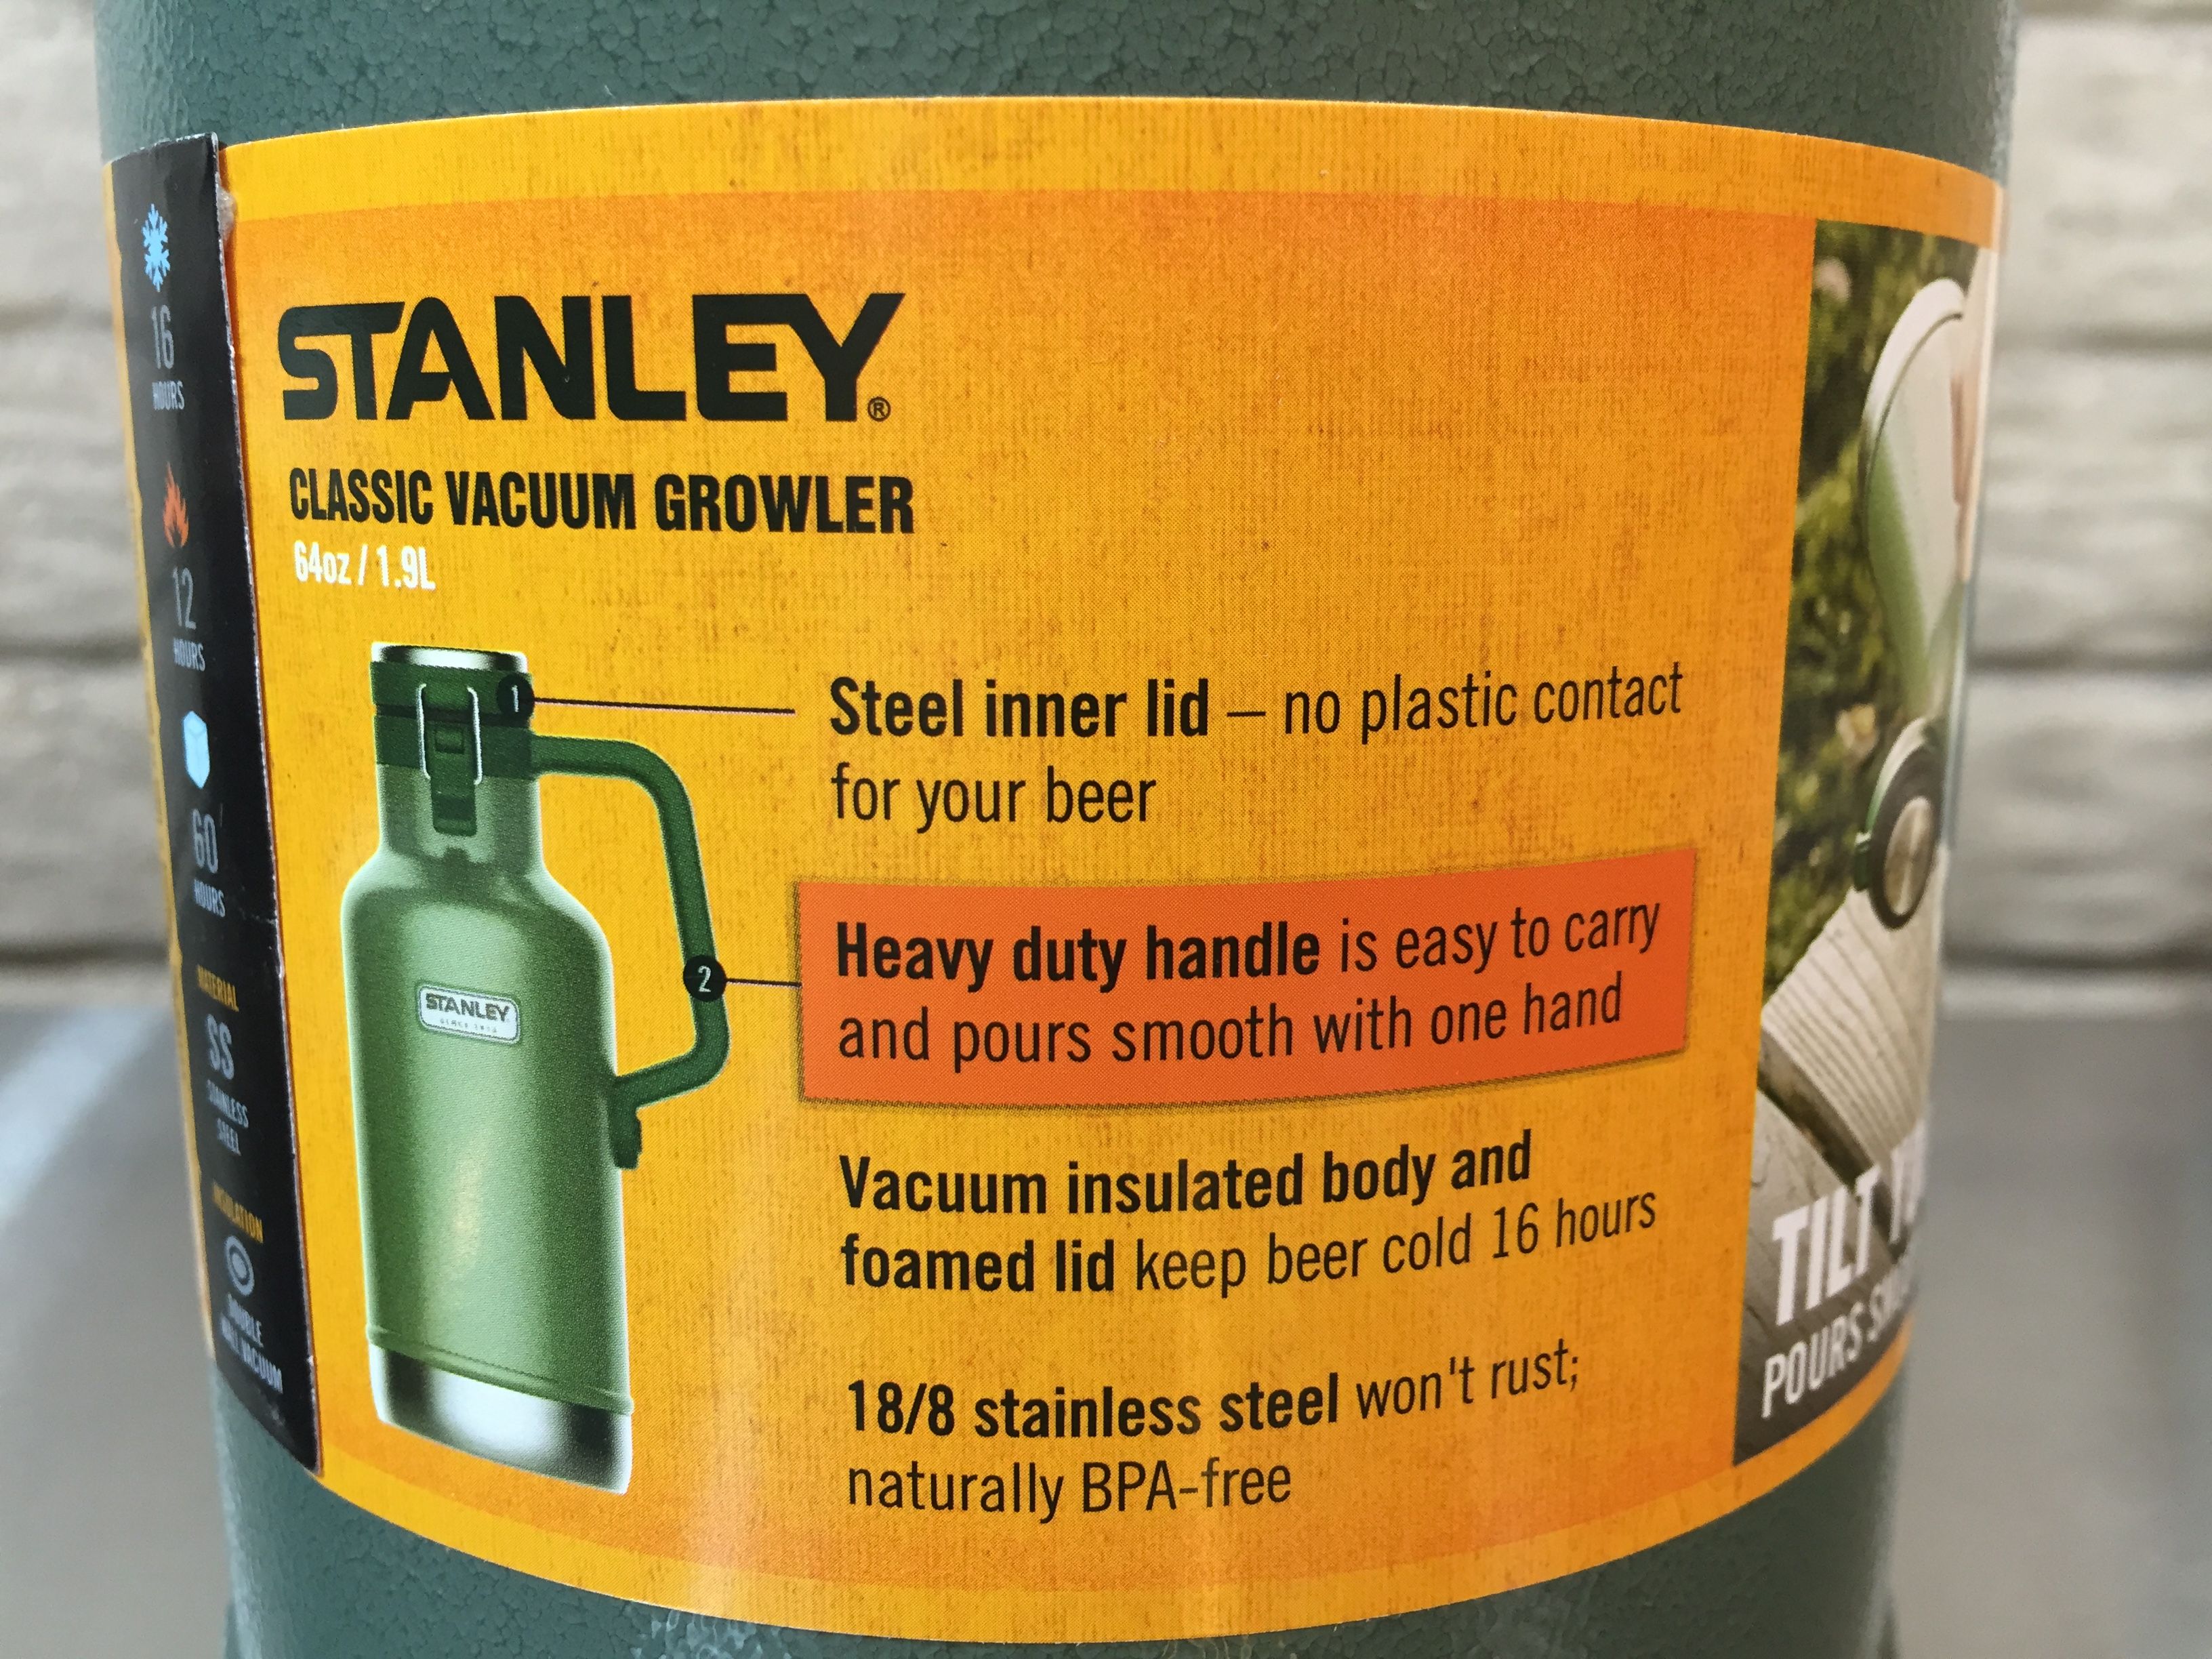 STANLEY GROWLER REVIEW 2021 - 64oz Beer Growler Outdoor Gift Set 